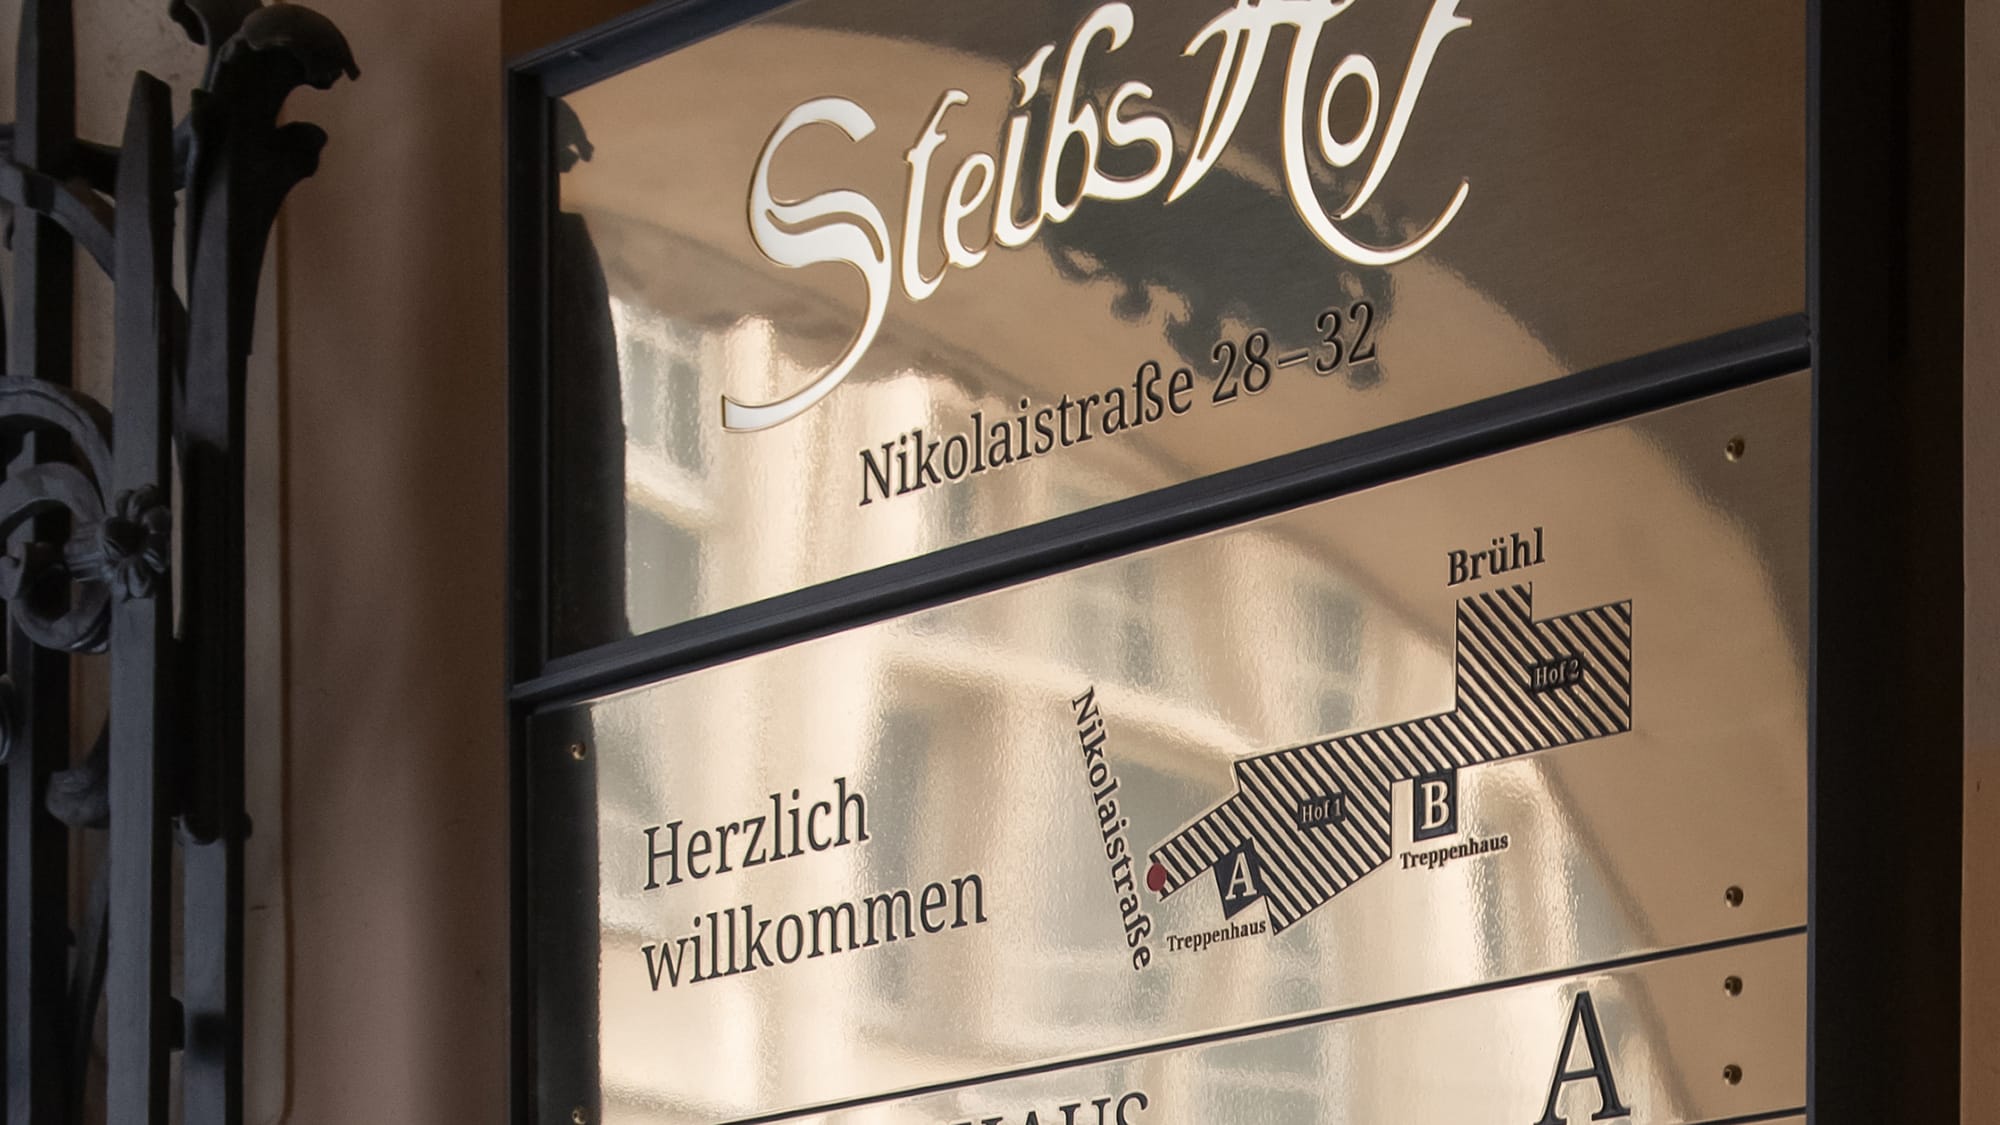 Steibs Hof Signage